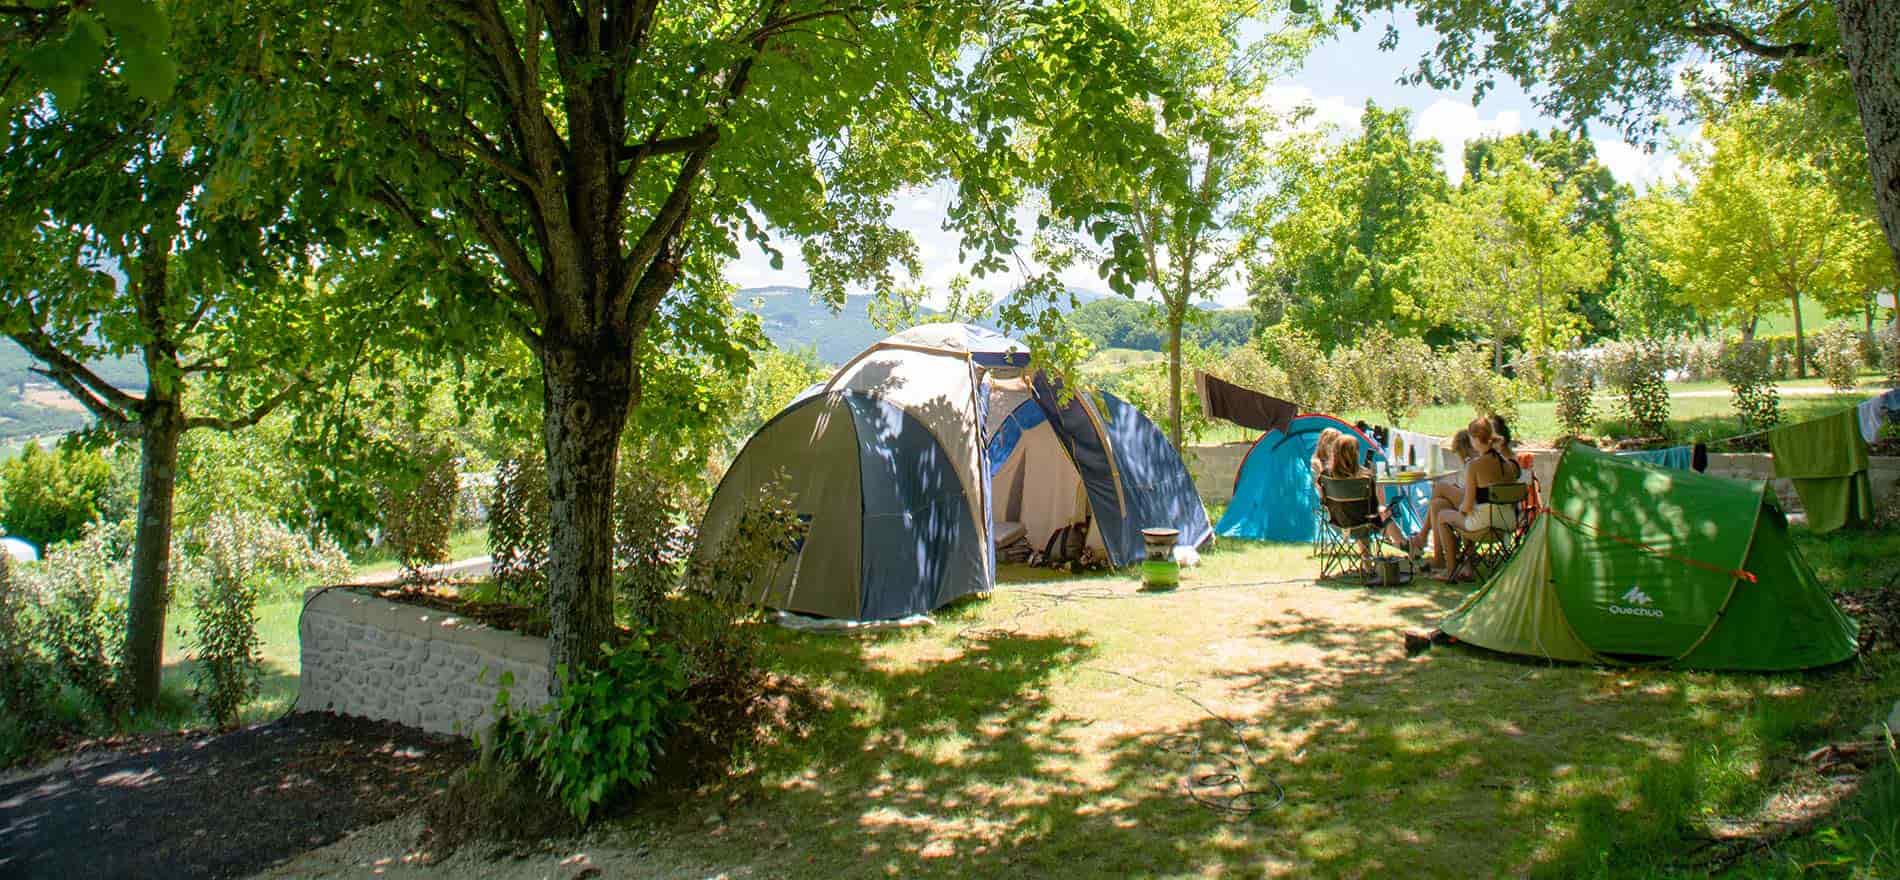 Camping caravane, nos locations d'emplacements en camping, tentes, camping -car